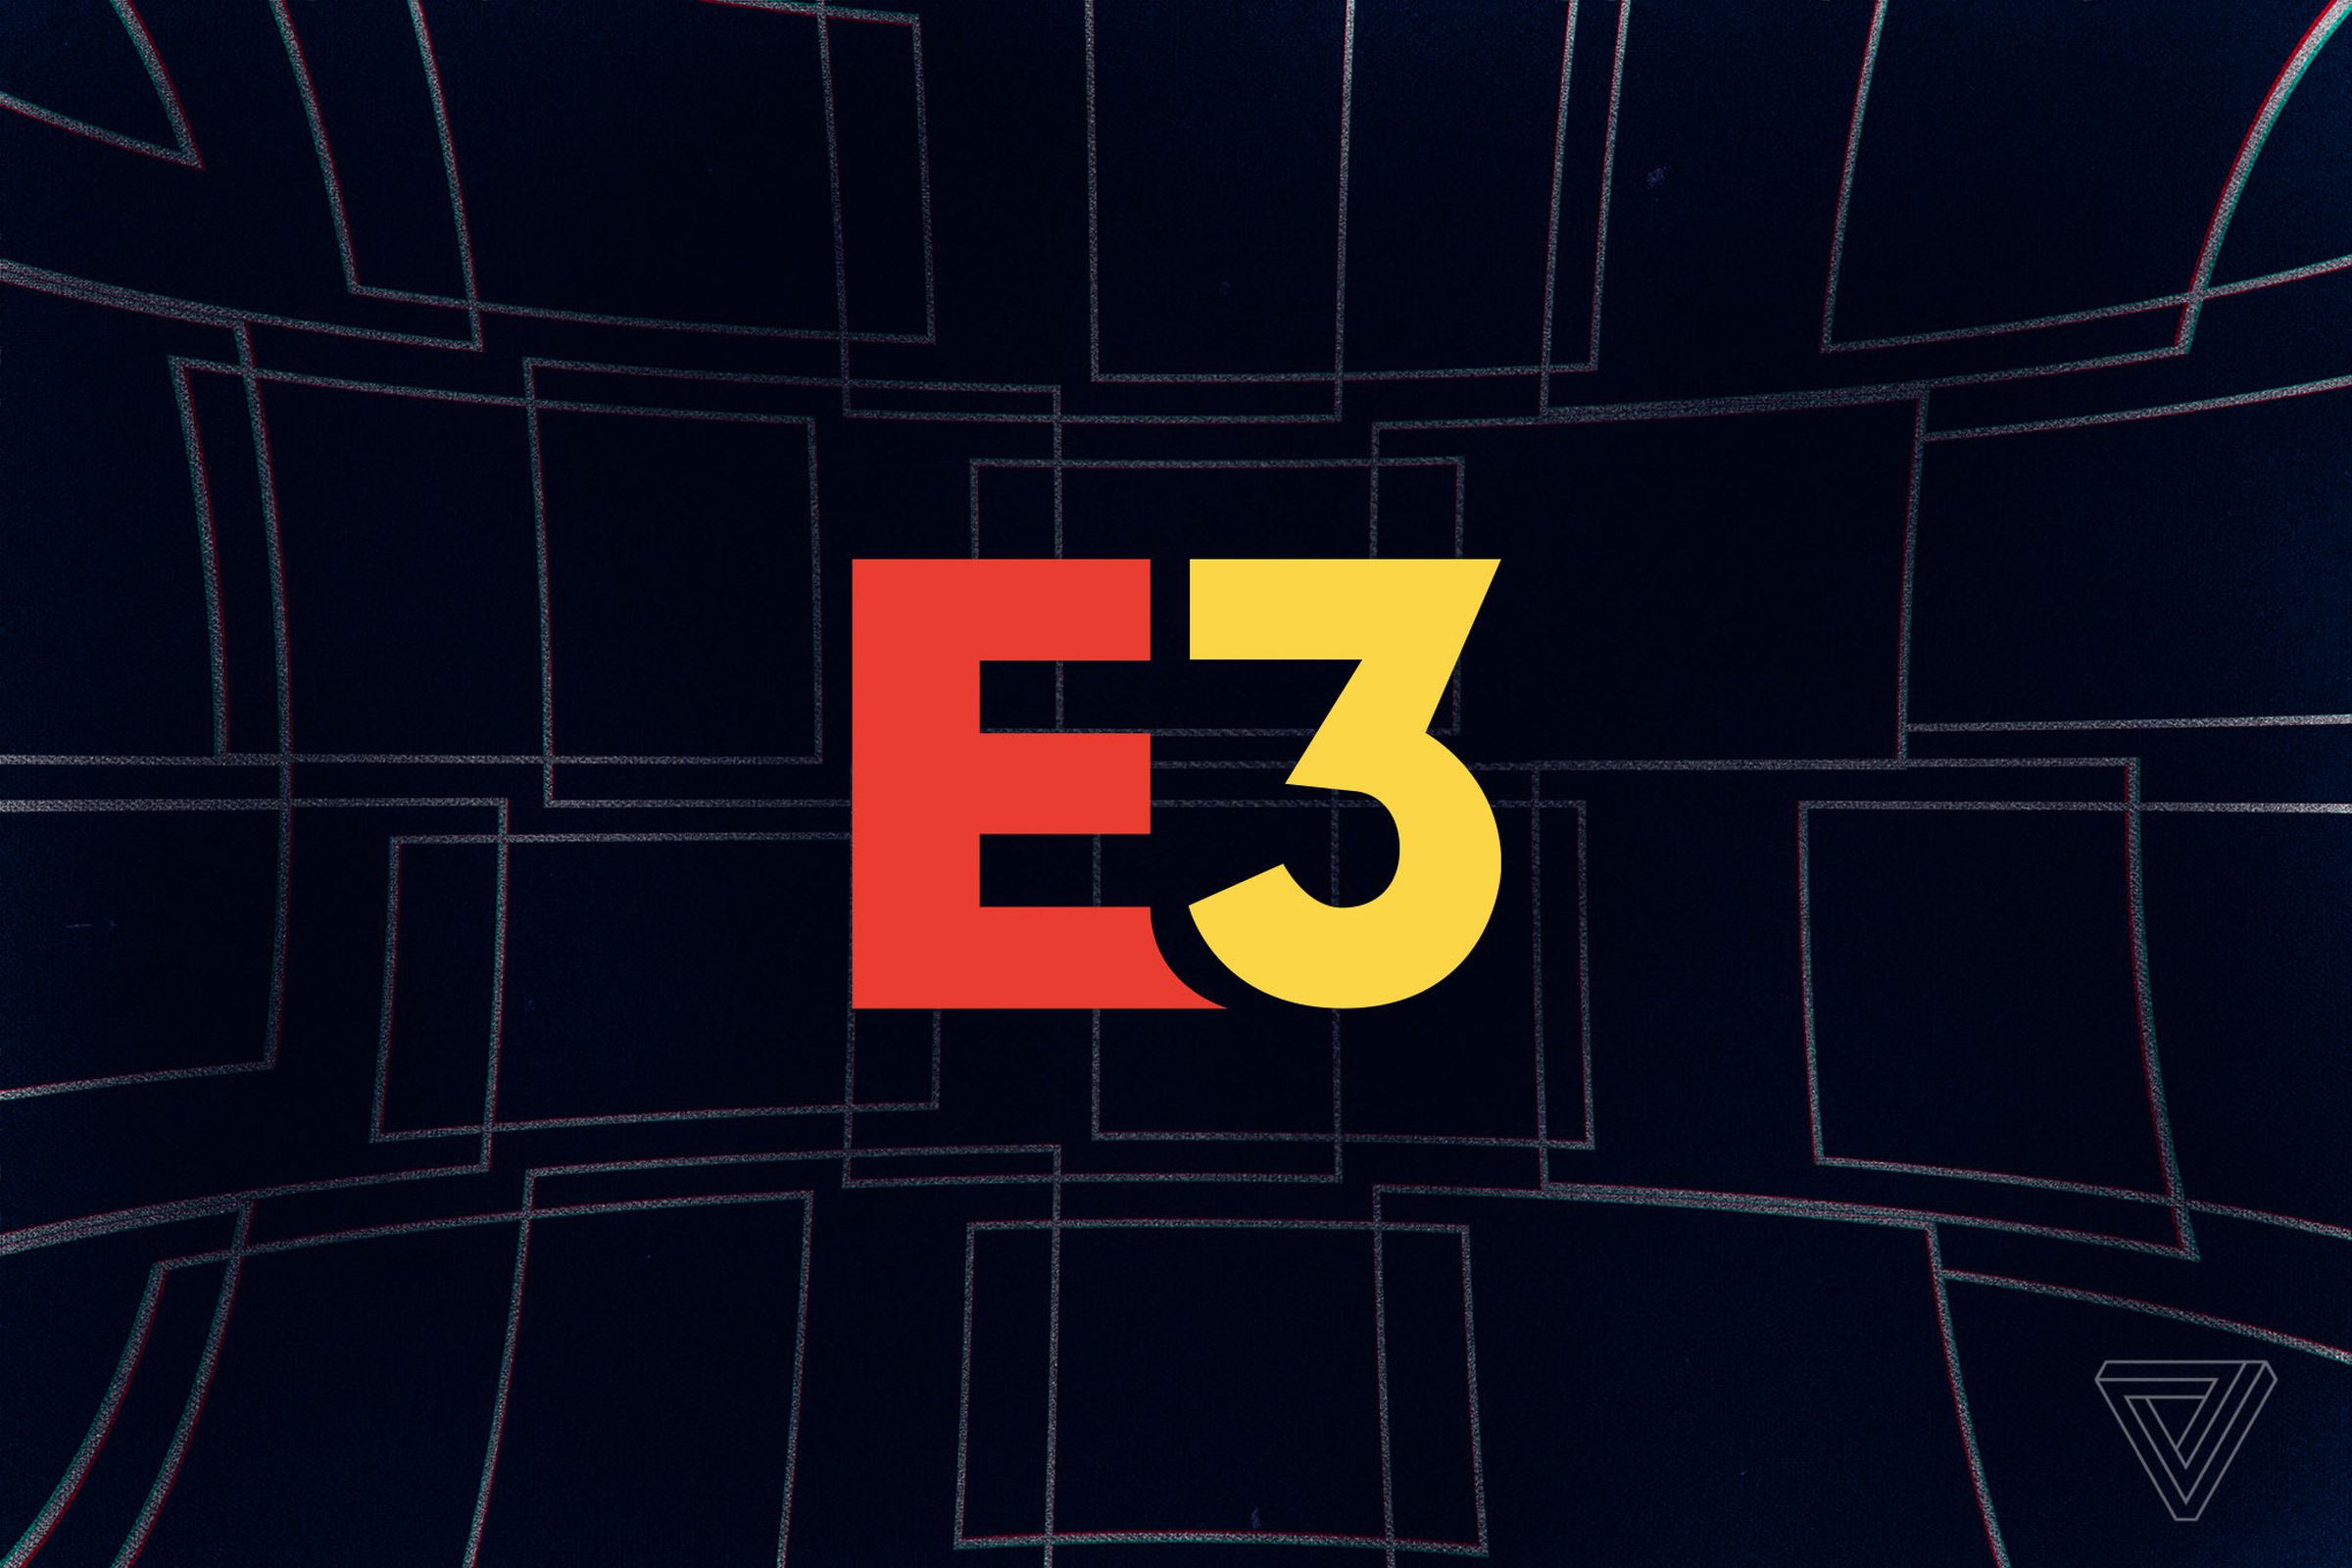 Illustration of the E3 logo